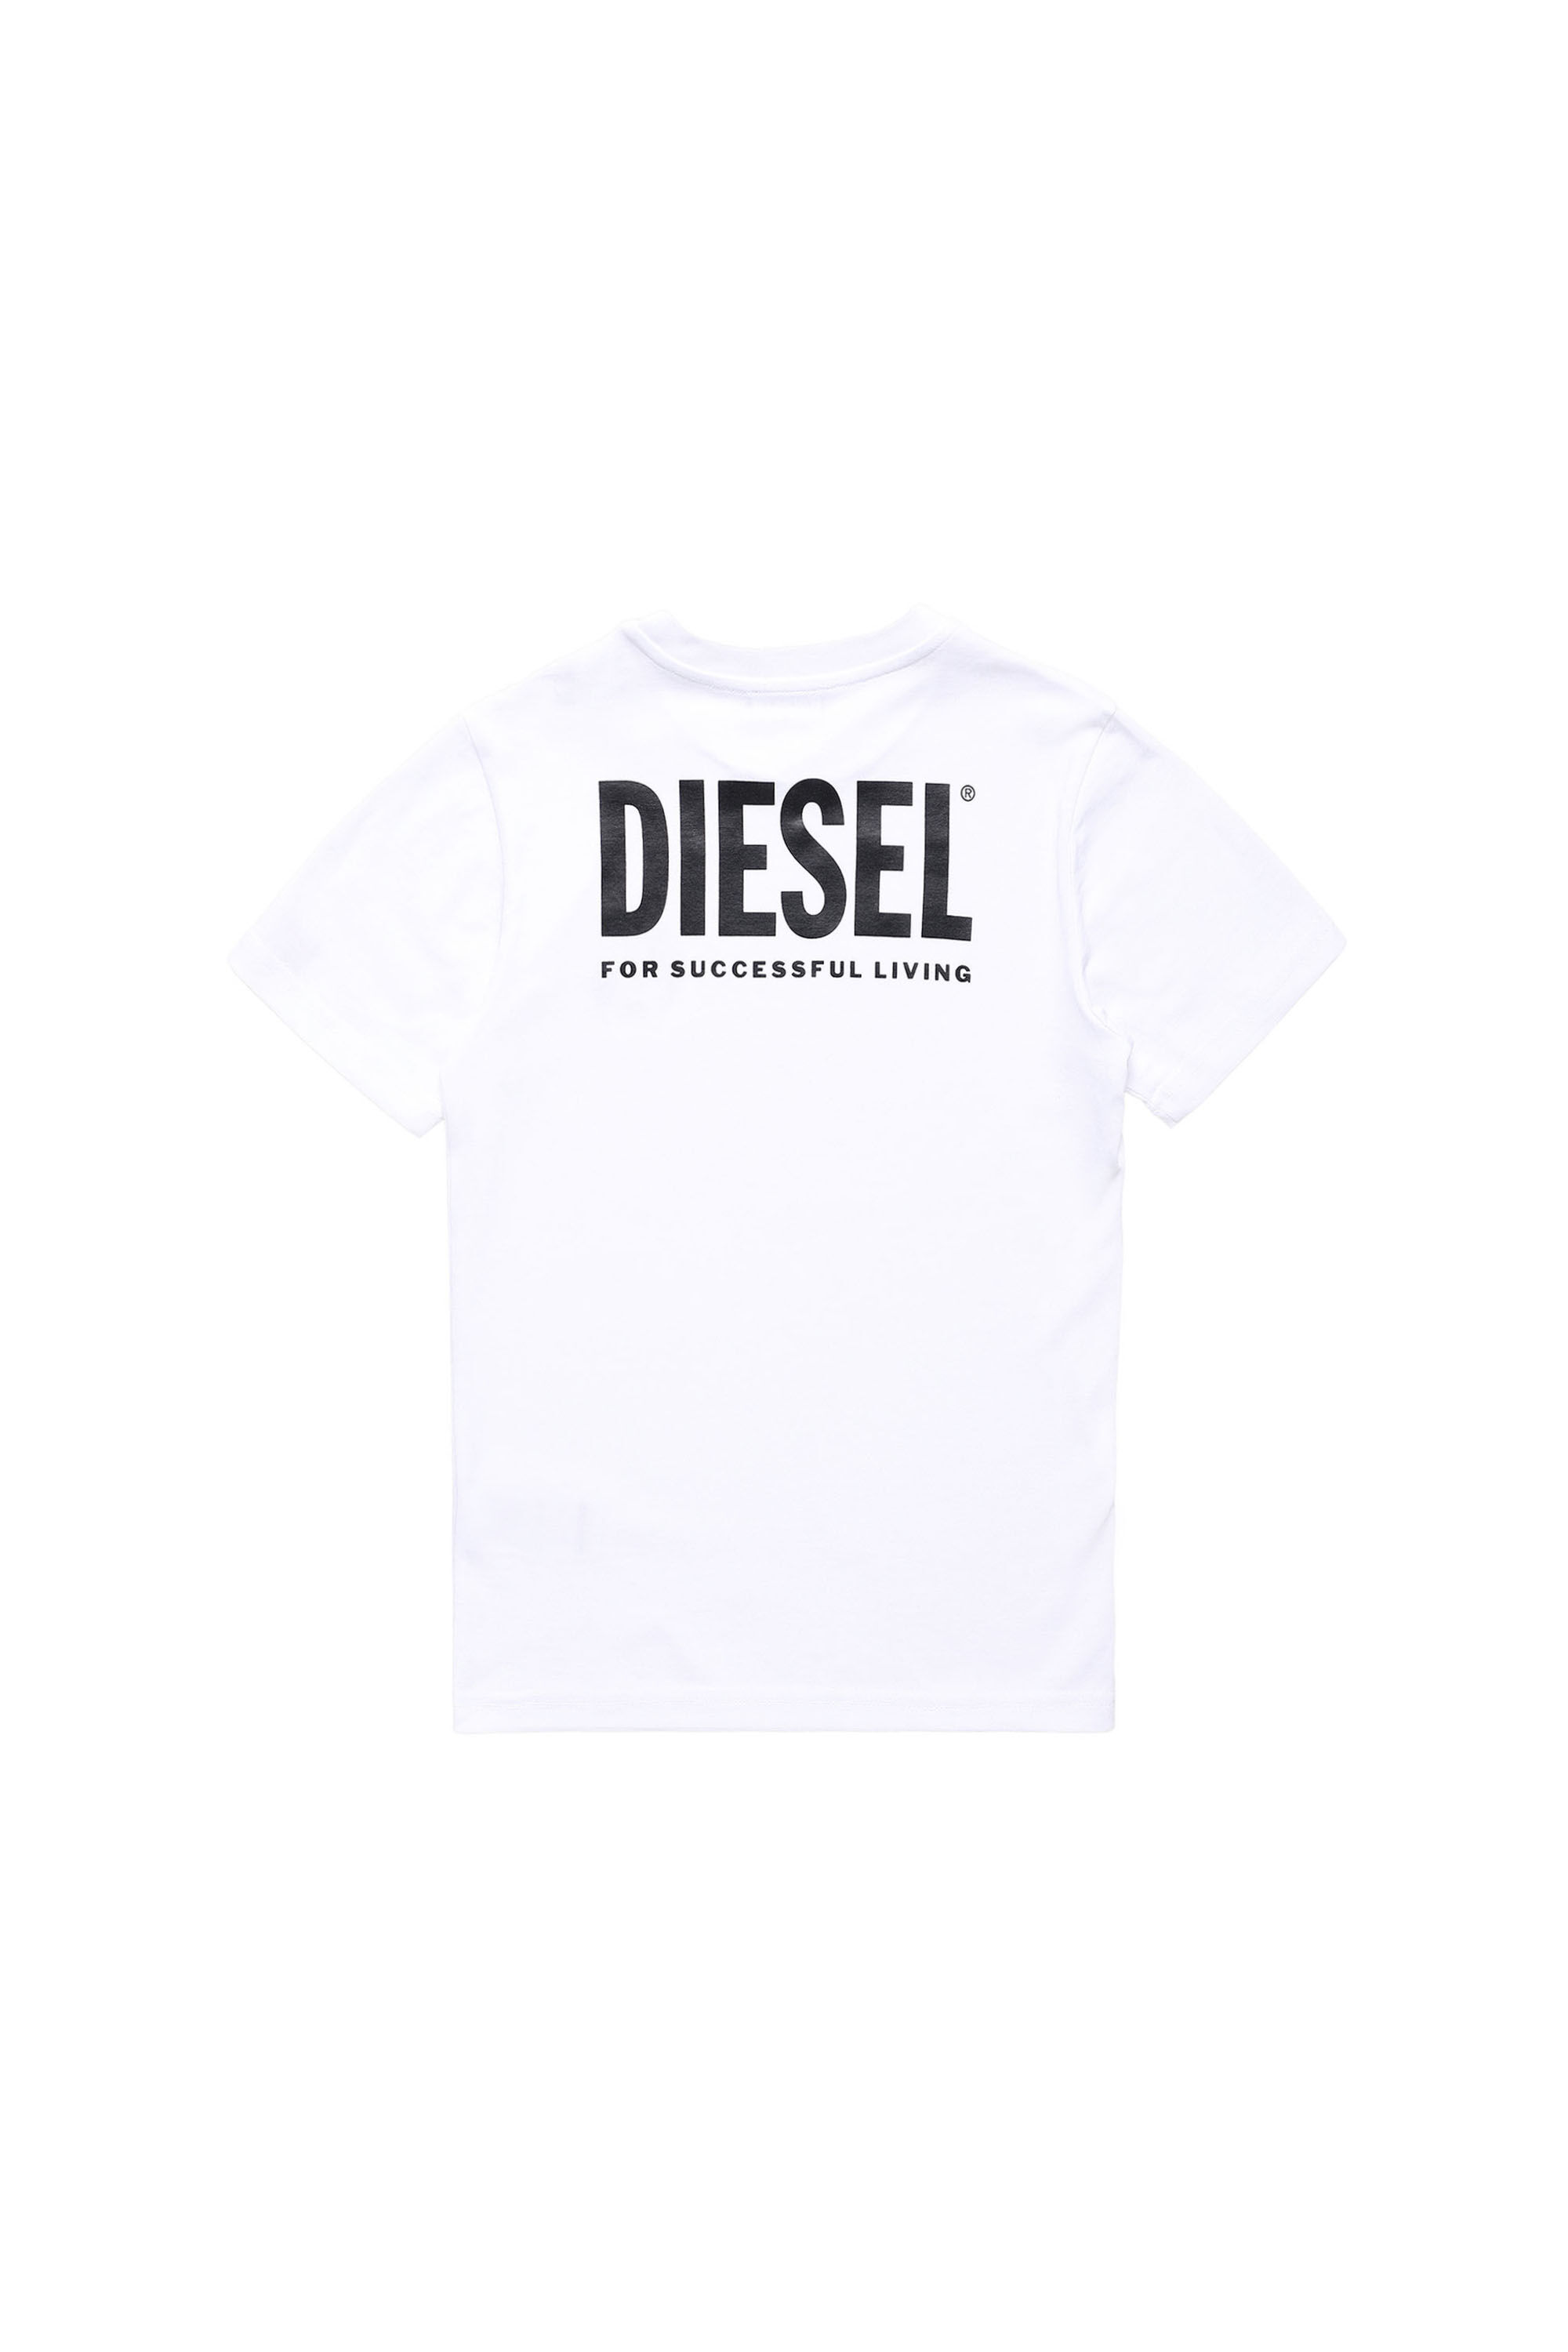 Diesel - LR TDIEGO VIC,  - Image 2